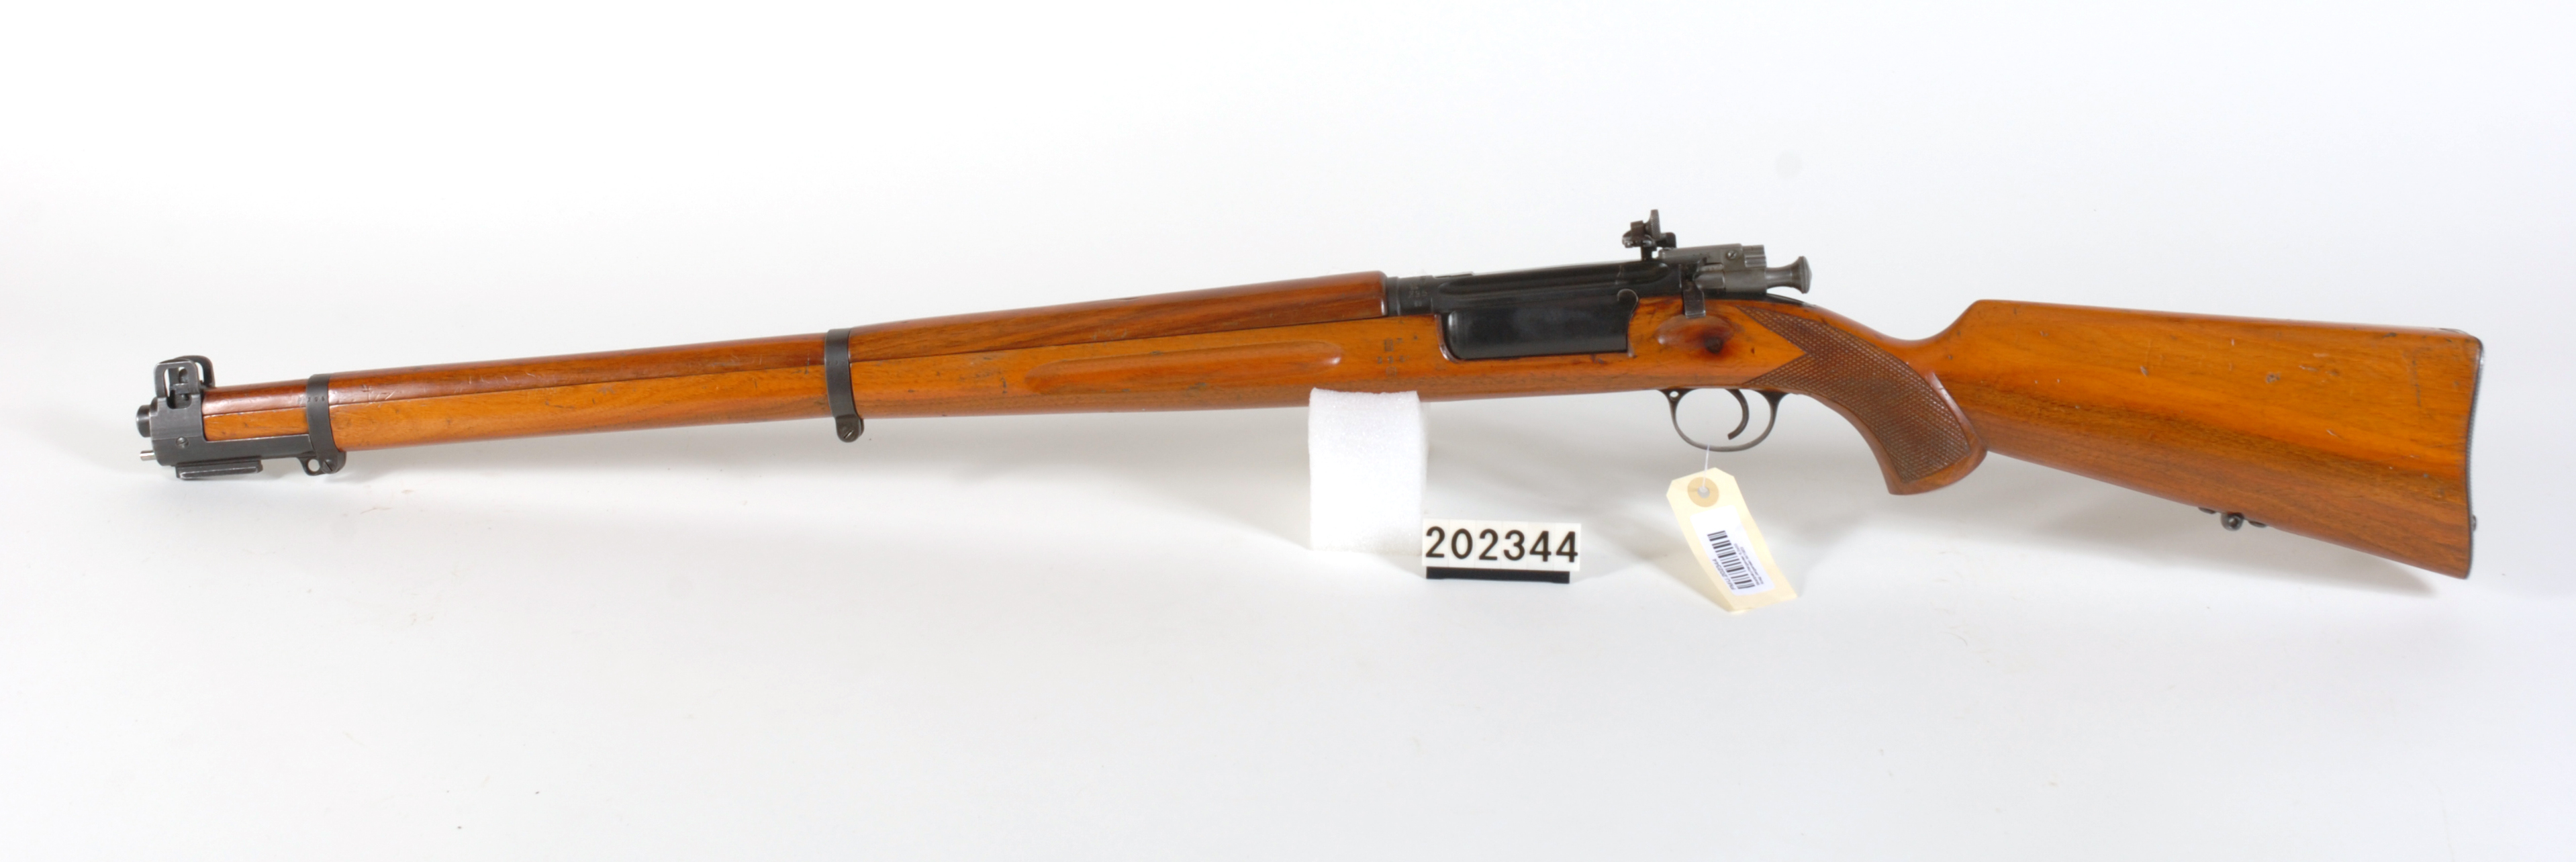 ./guns/rifle/bilder/Rifle-Kongsberg-Krag-M1923-FMU.202344c.jpg